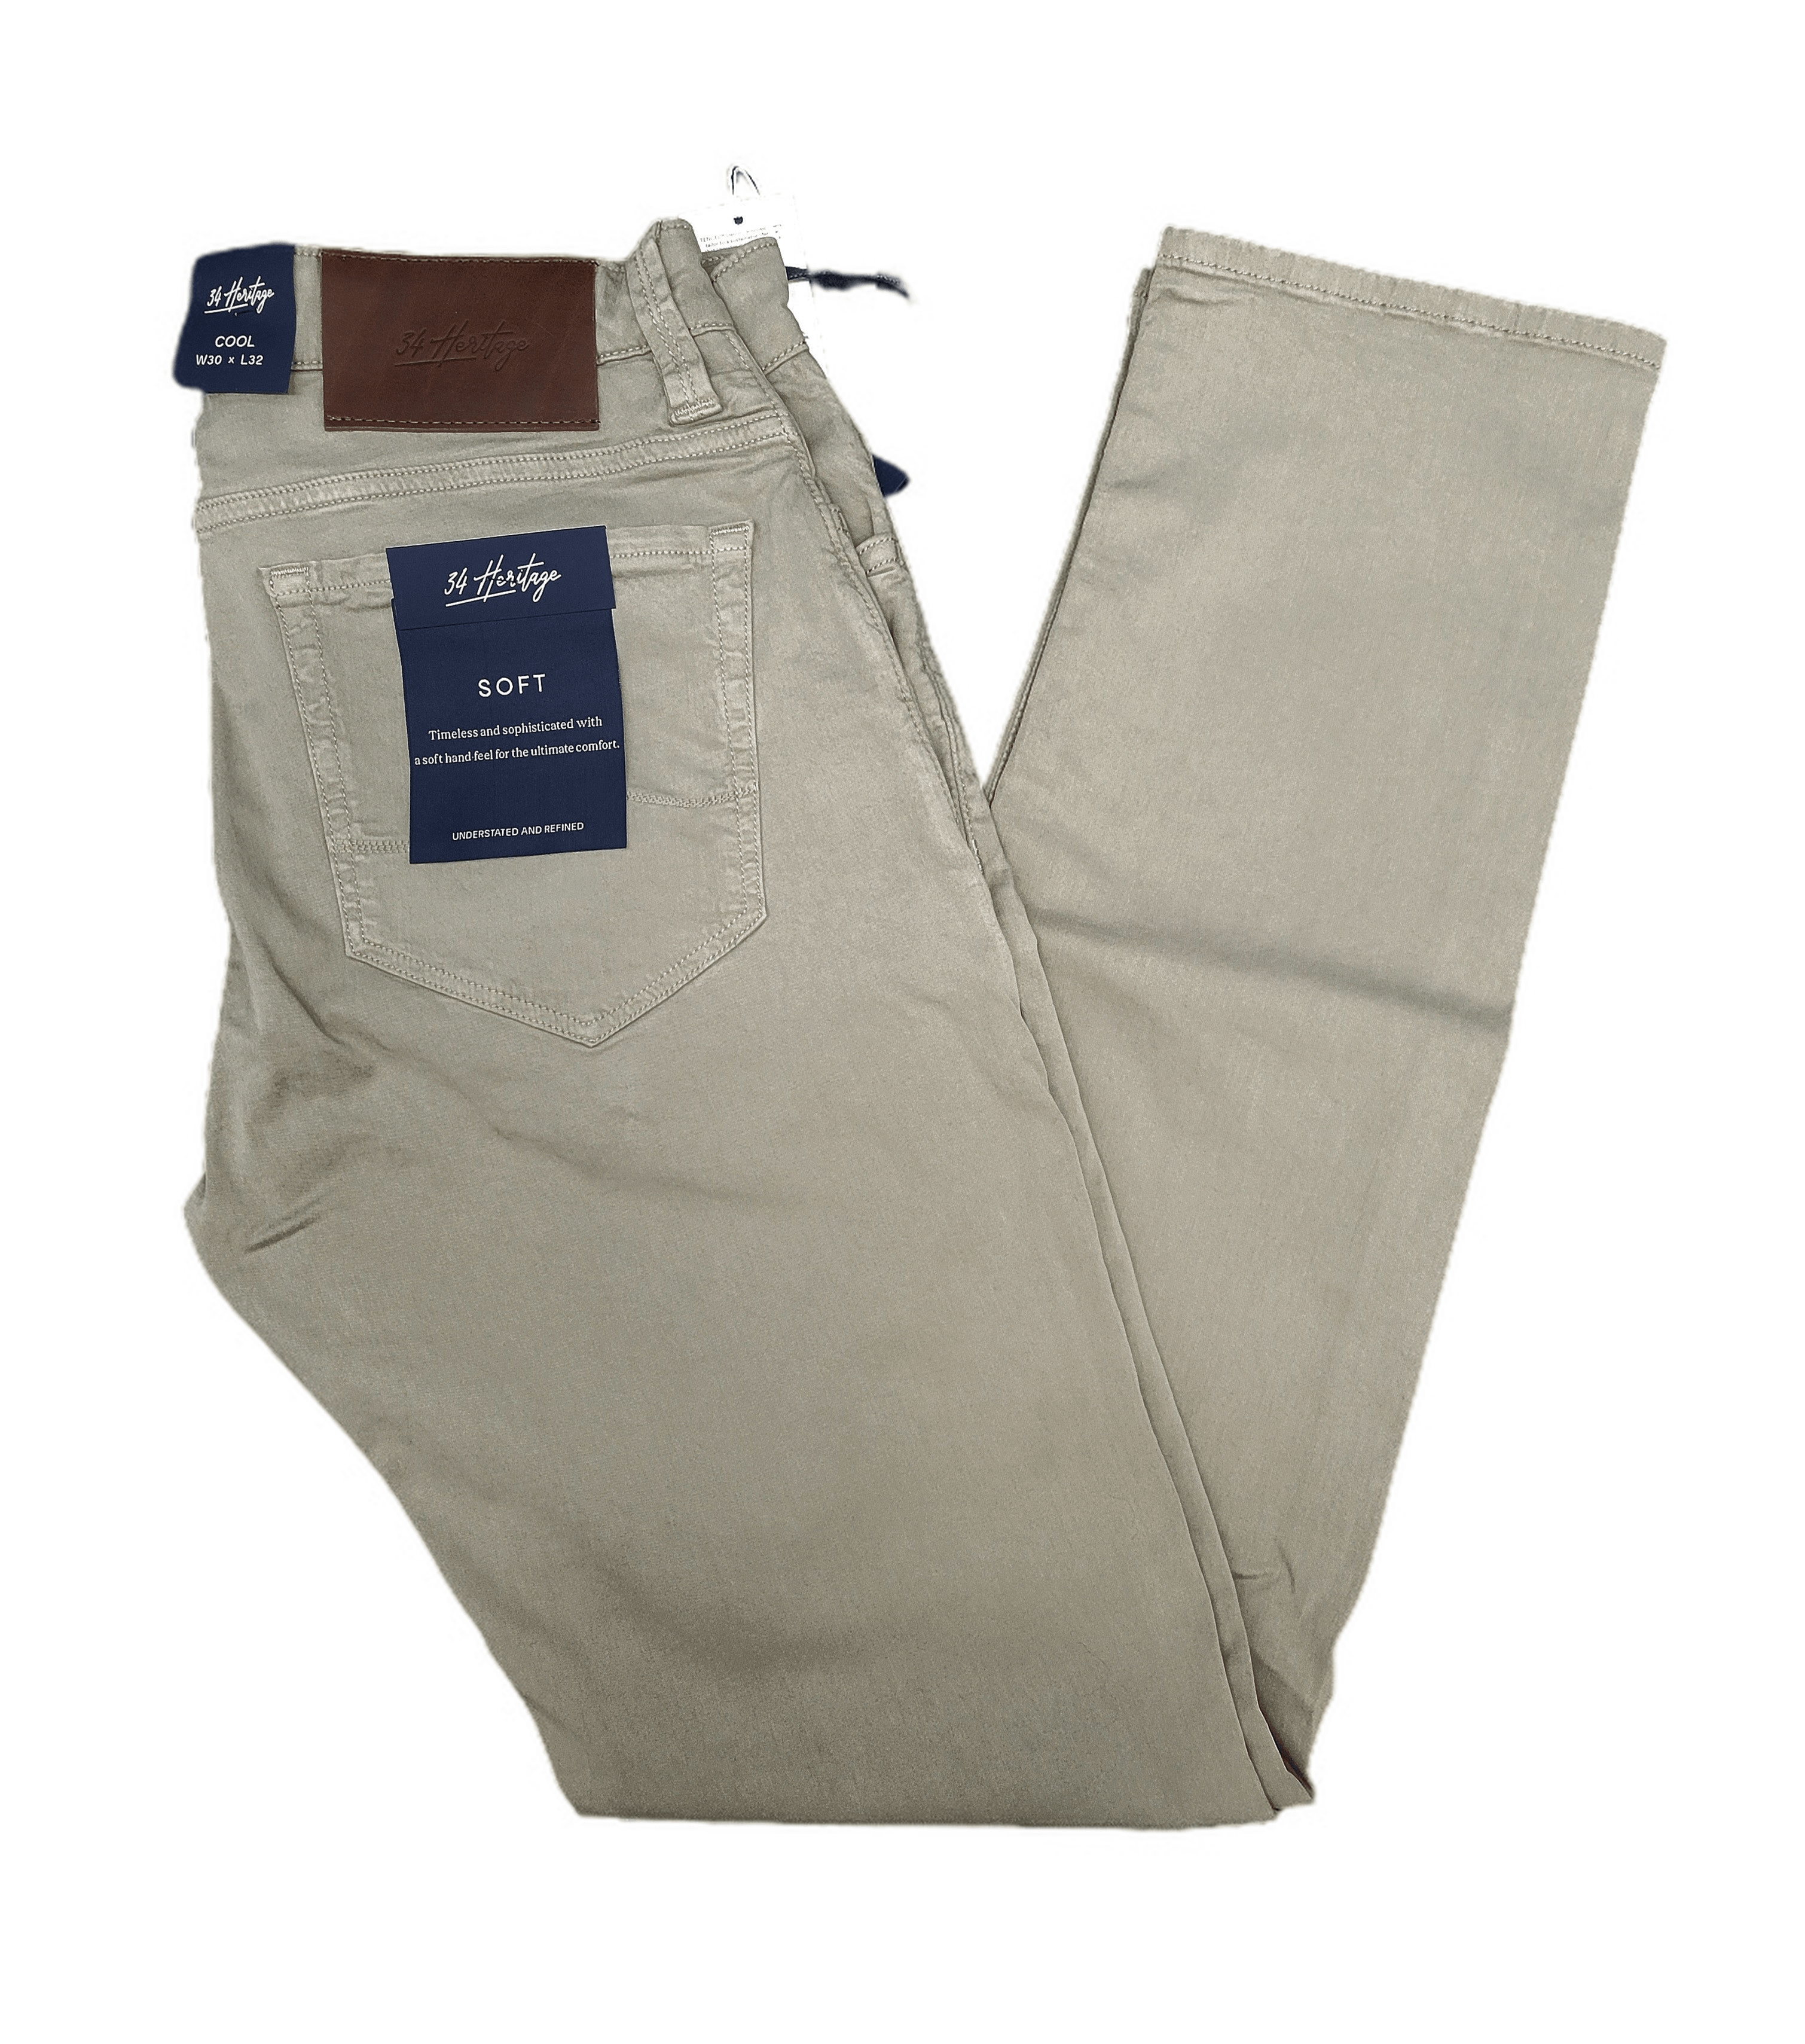 Laflamme- Jeans soft ajusté extensible - 34 Heritage